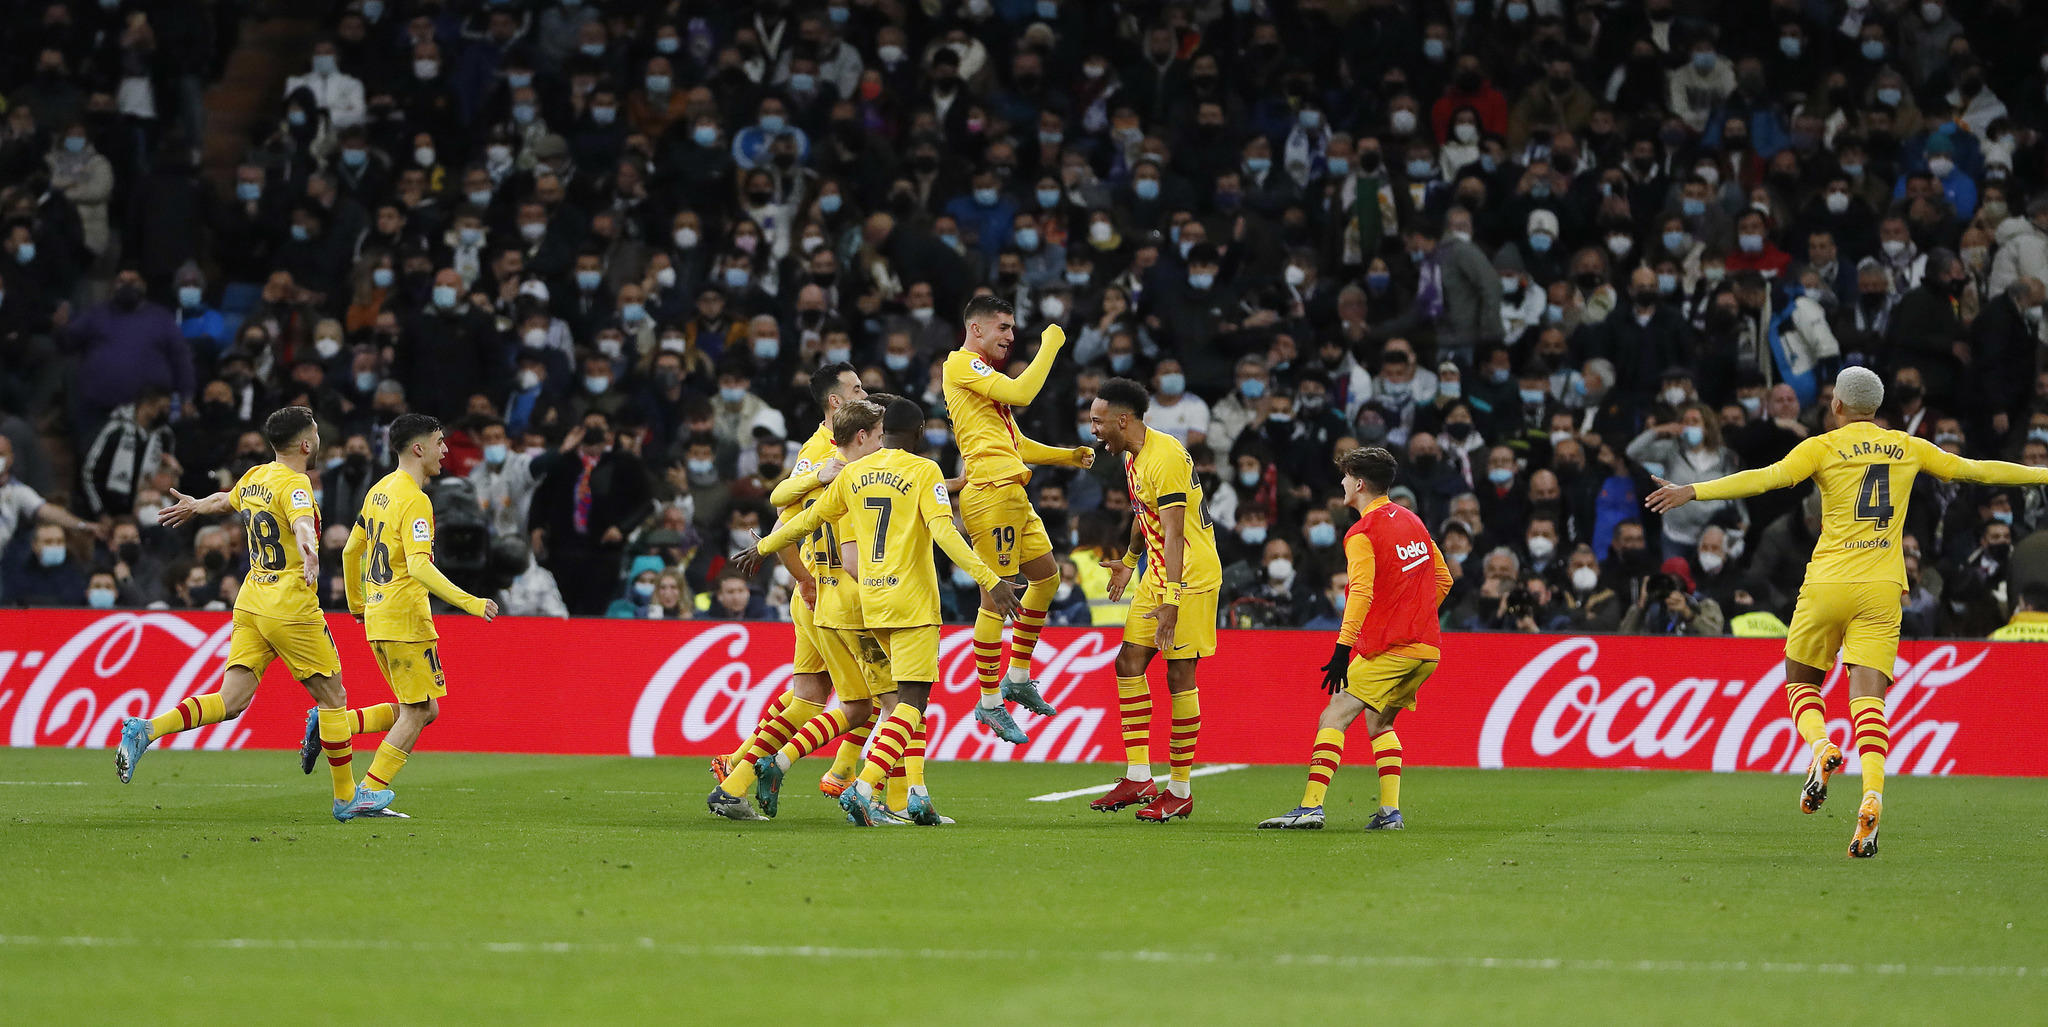 Sus compañeros acuden a felicitar a Ferran después de su gol ante el Madrid. / CHEMA REY